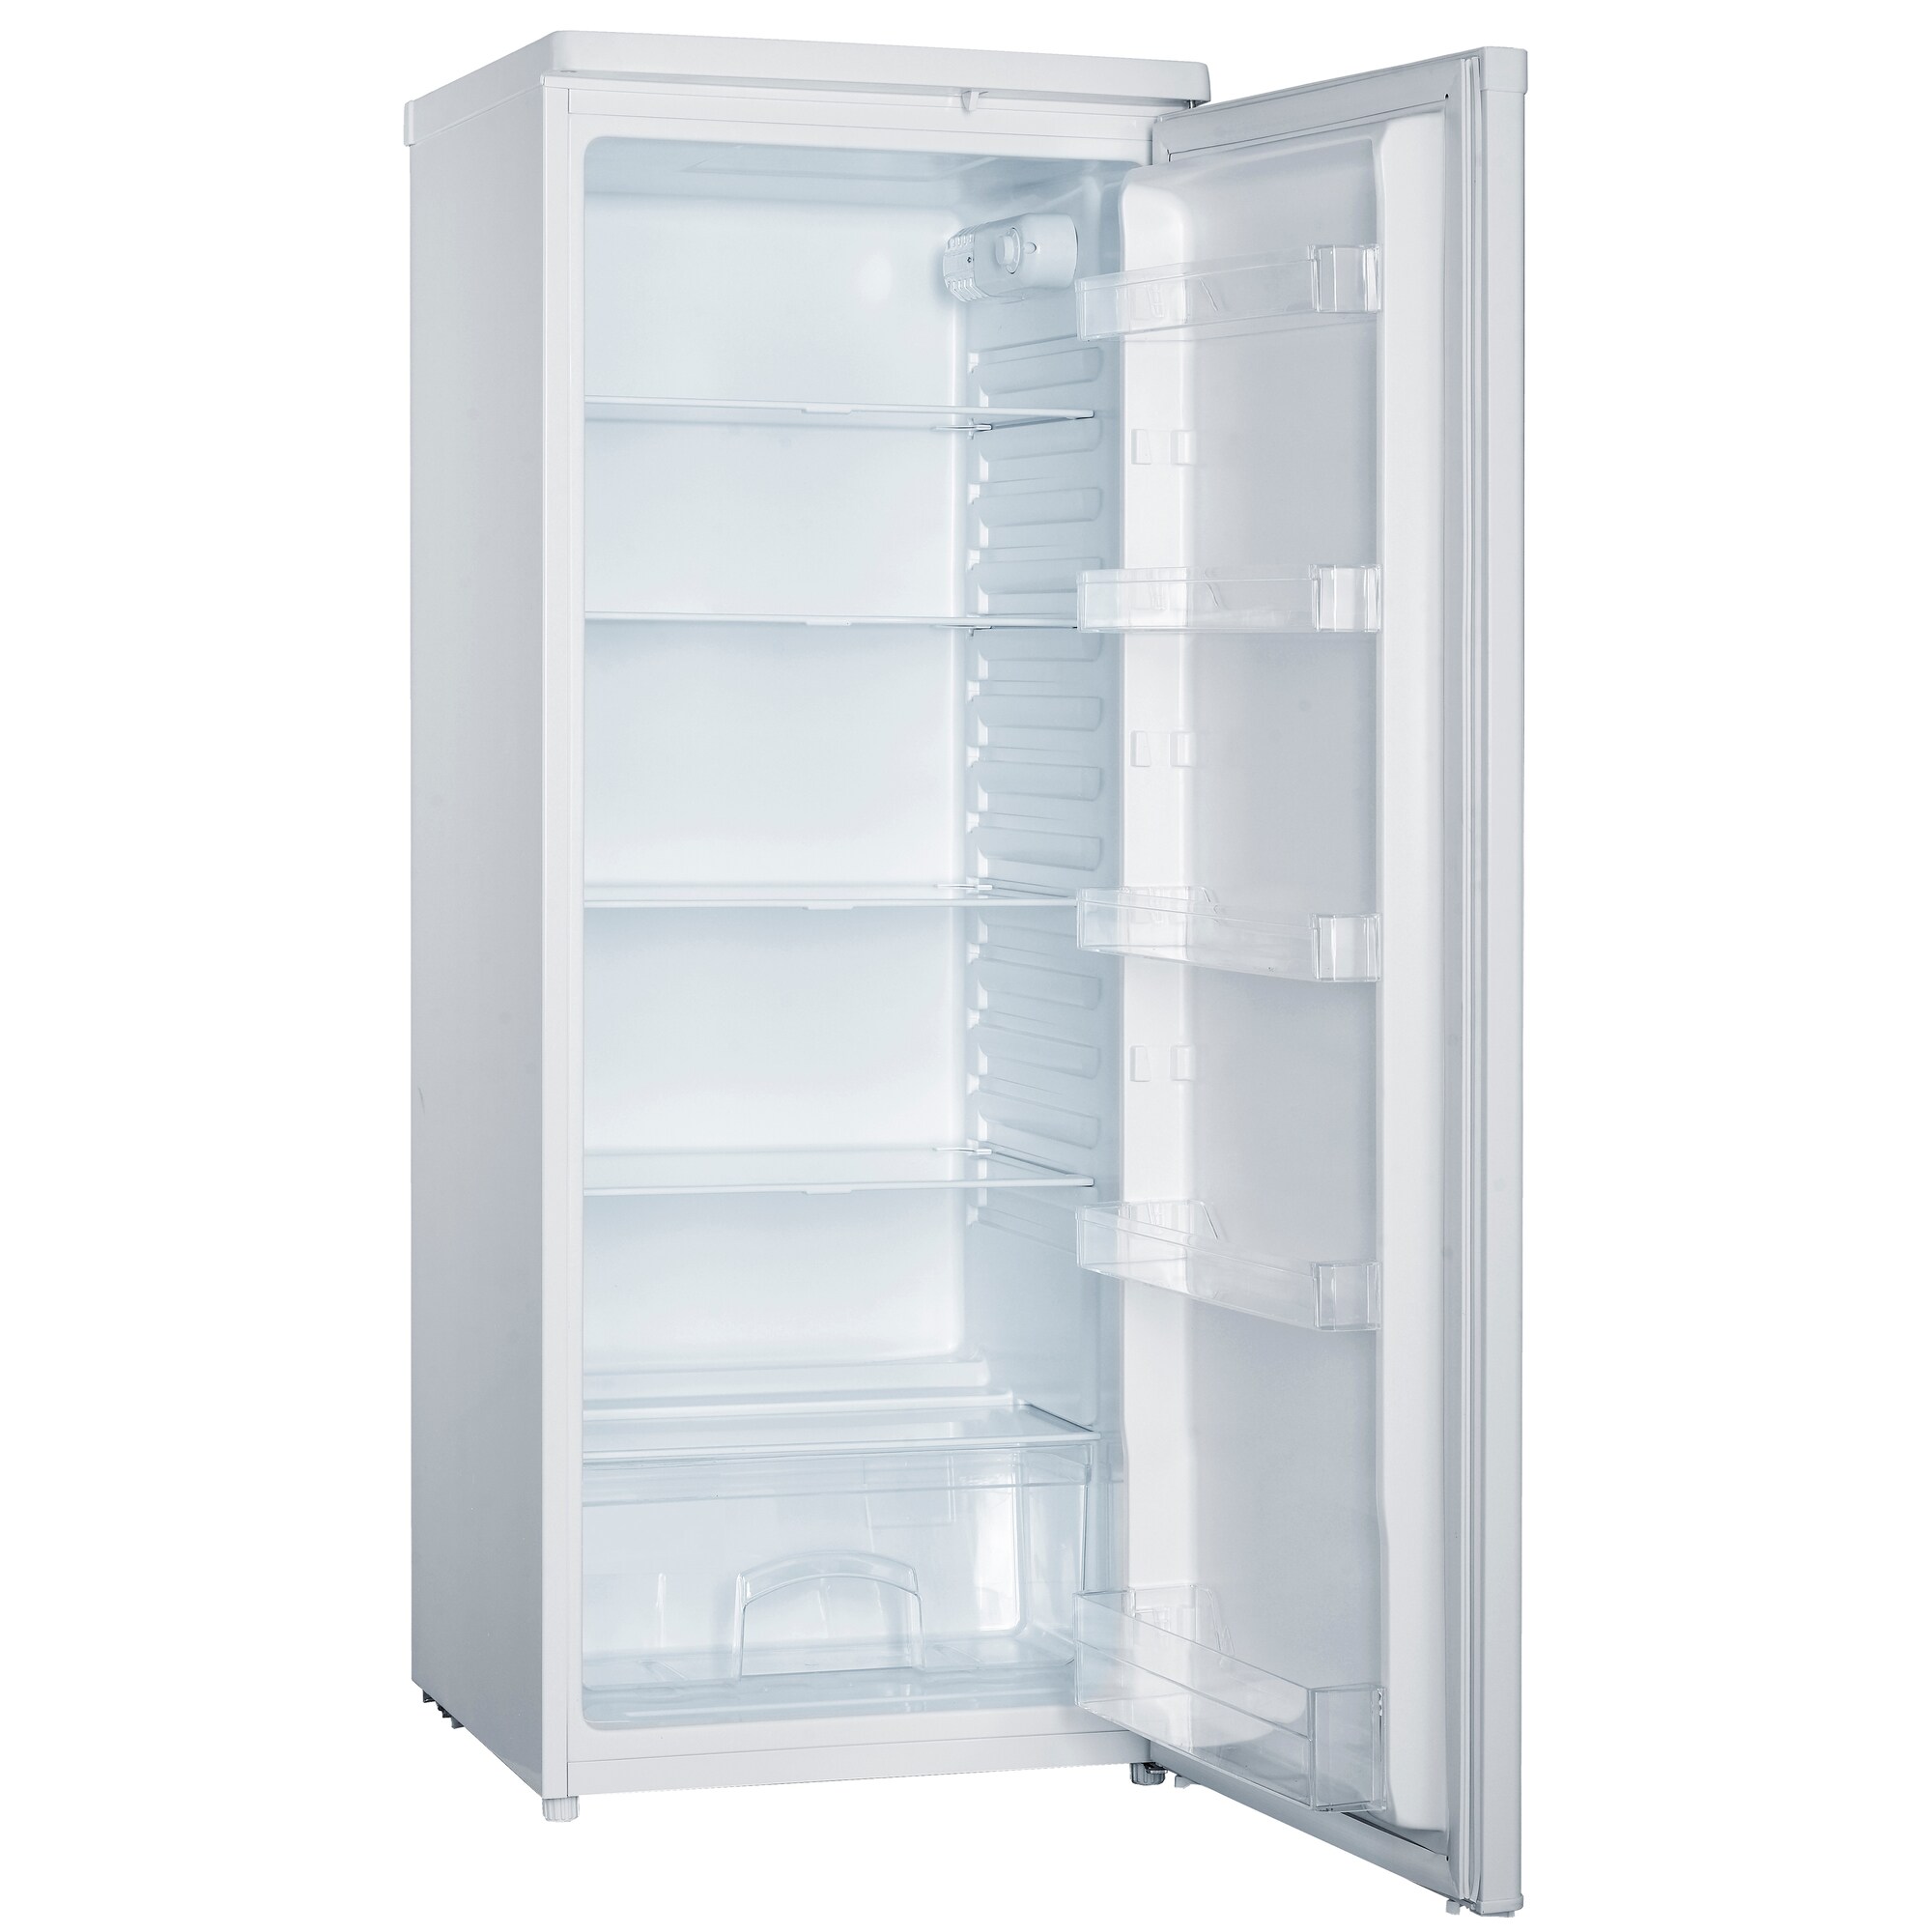 Køleskabe - Køb et billig køleskab på tilbud i dag - Elgiganten